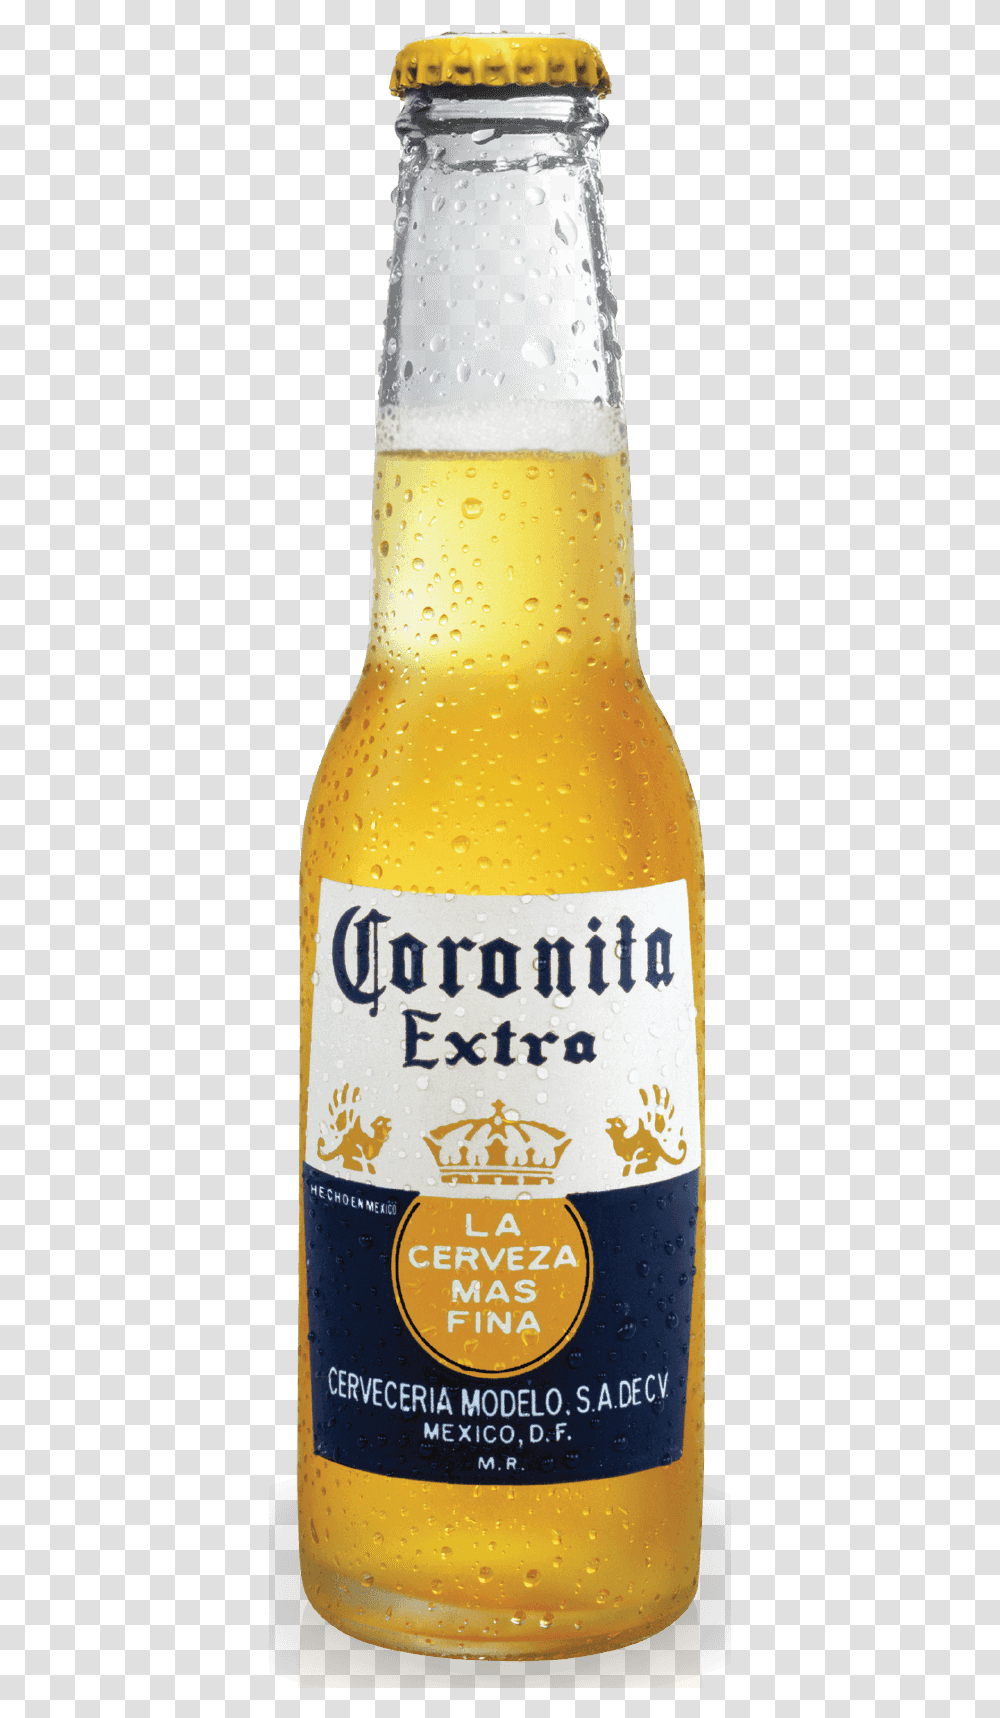 Cerveza Modelo Corona Bottle Clip Art, Beer, Alcohol, Beverage, Drink Transparent Png